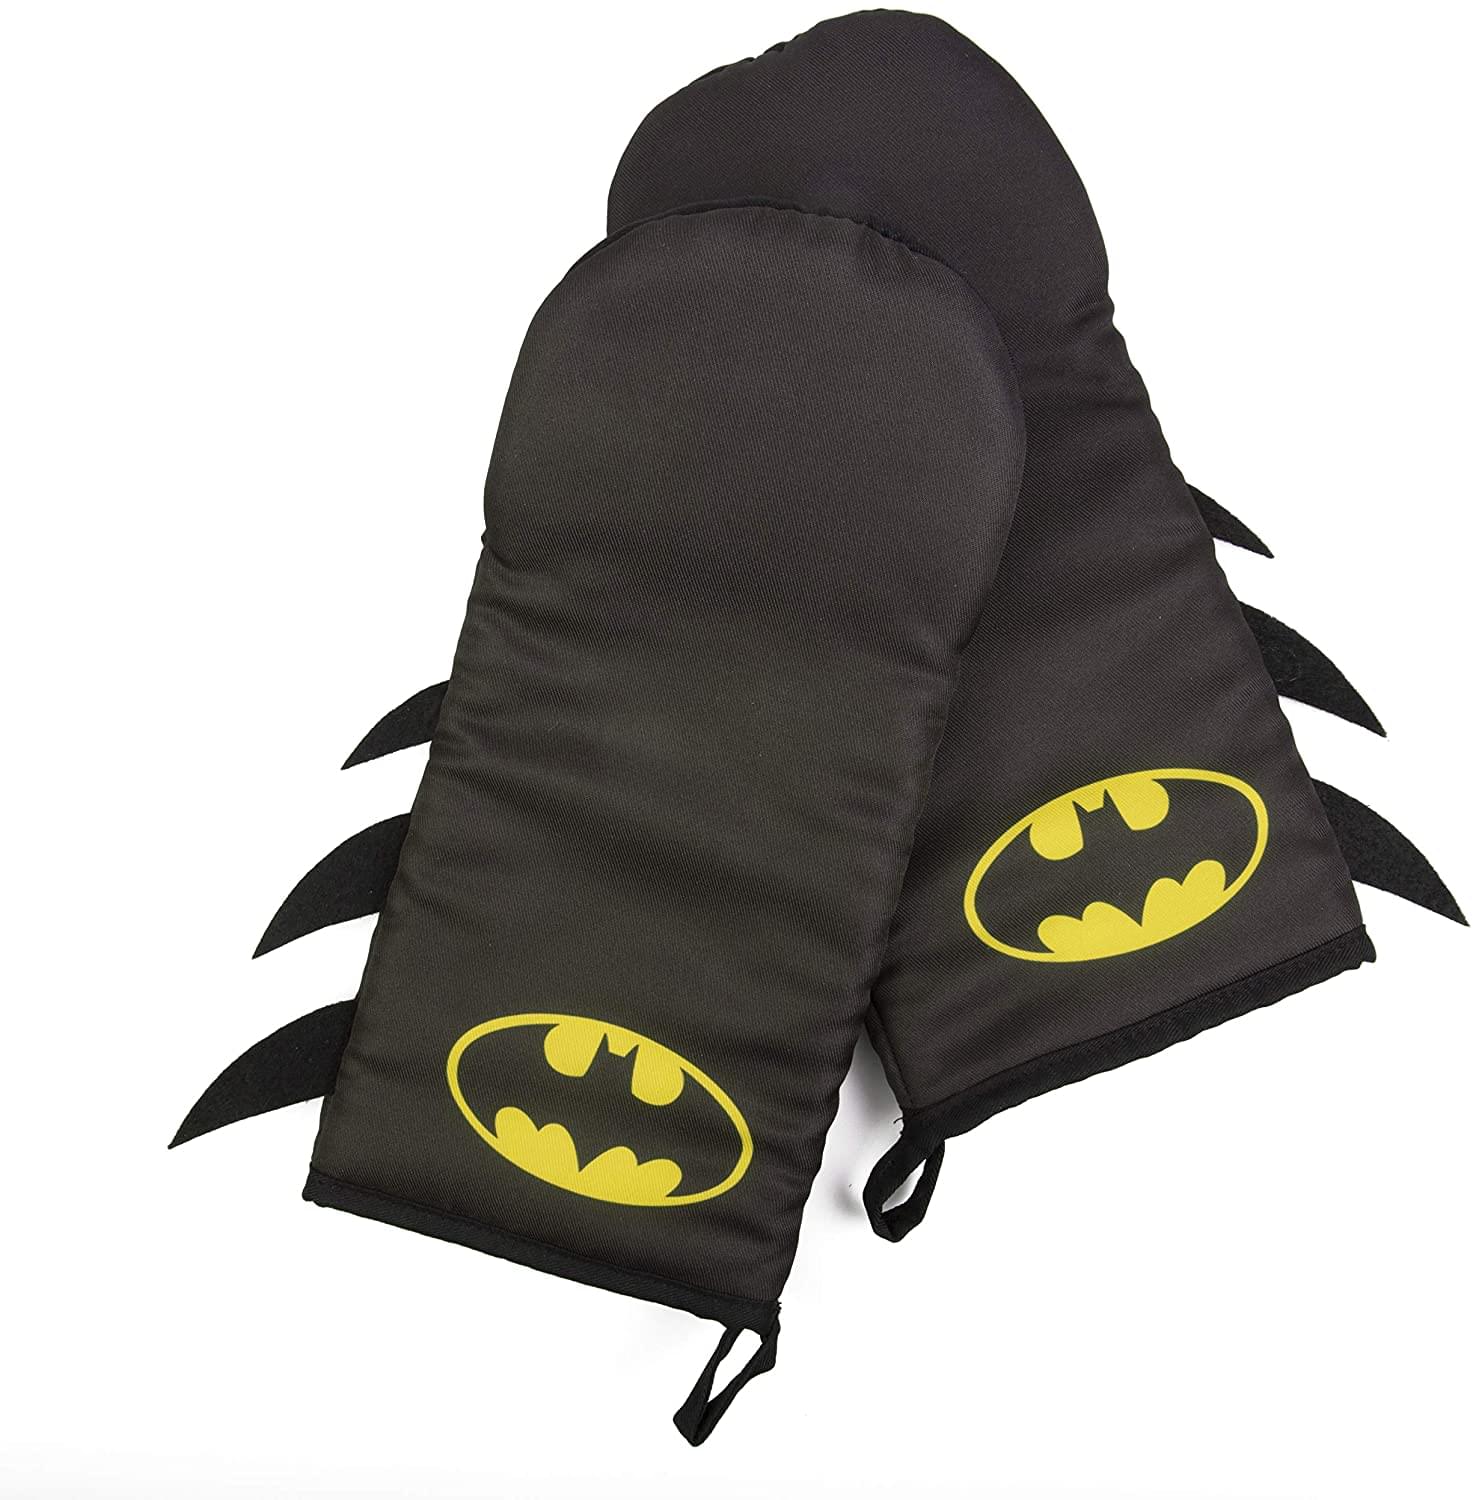 DC Comics Batman Bat Symbol Oven Mitt 2 Pack